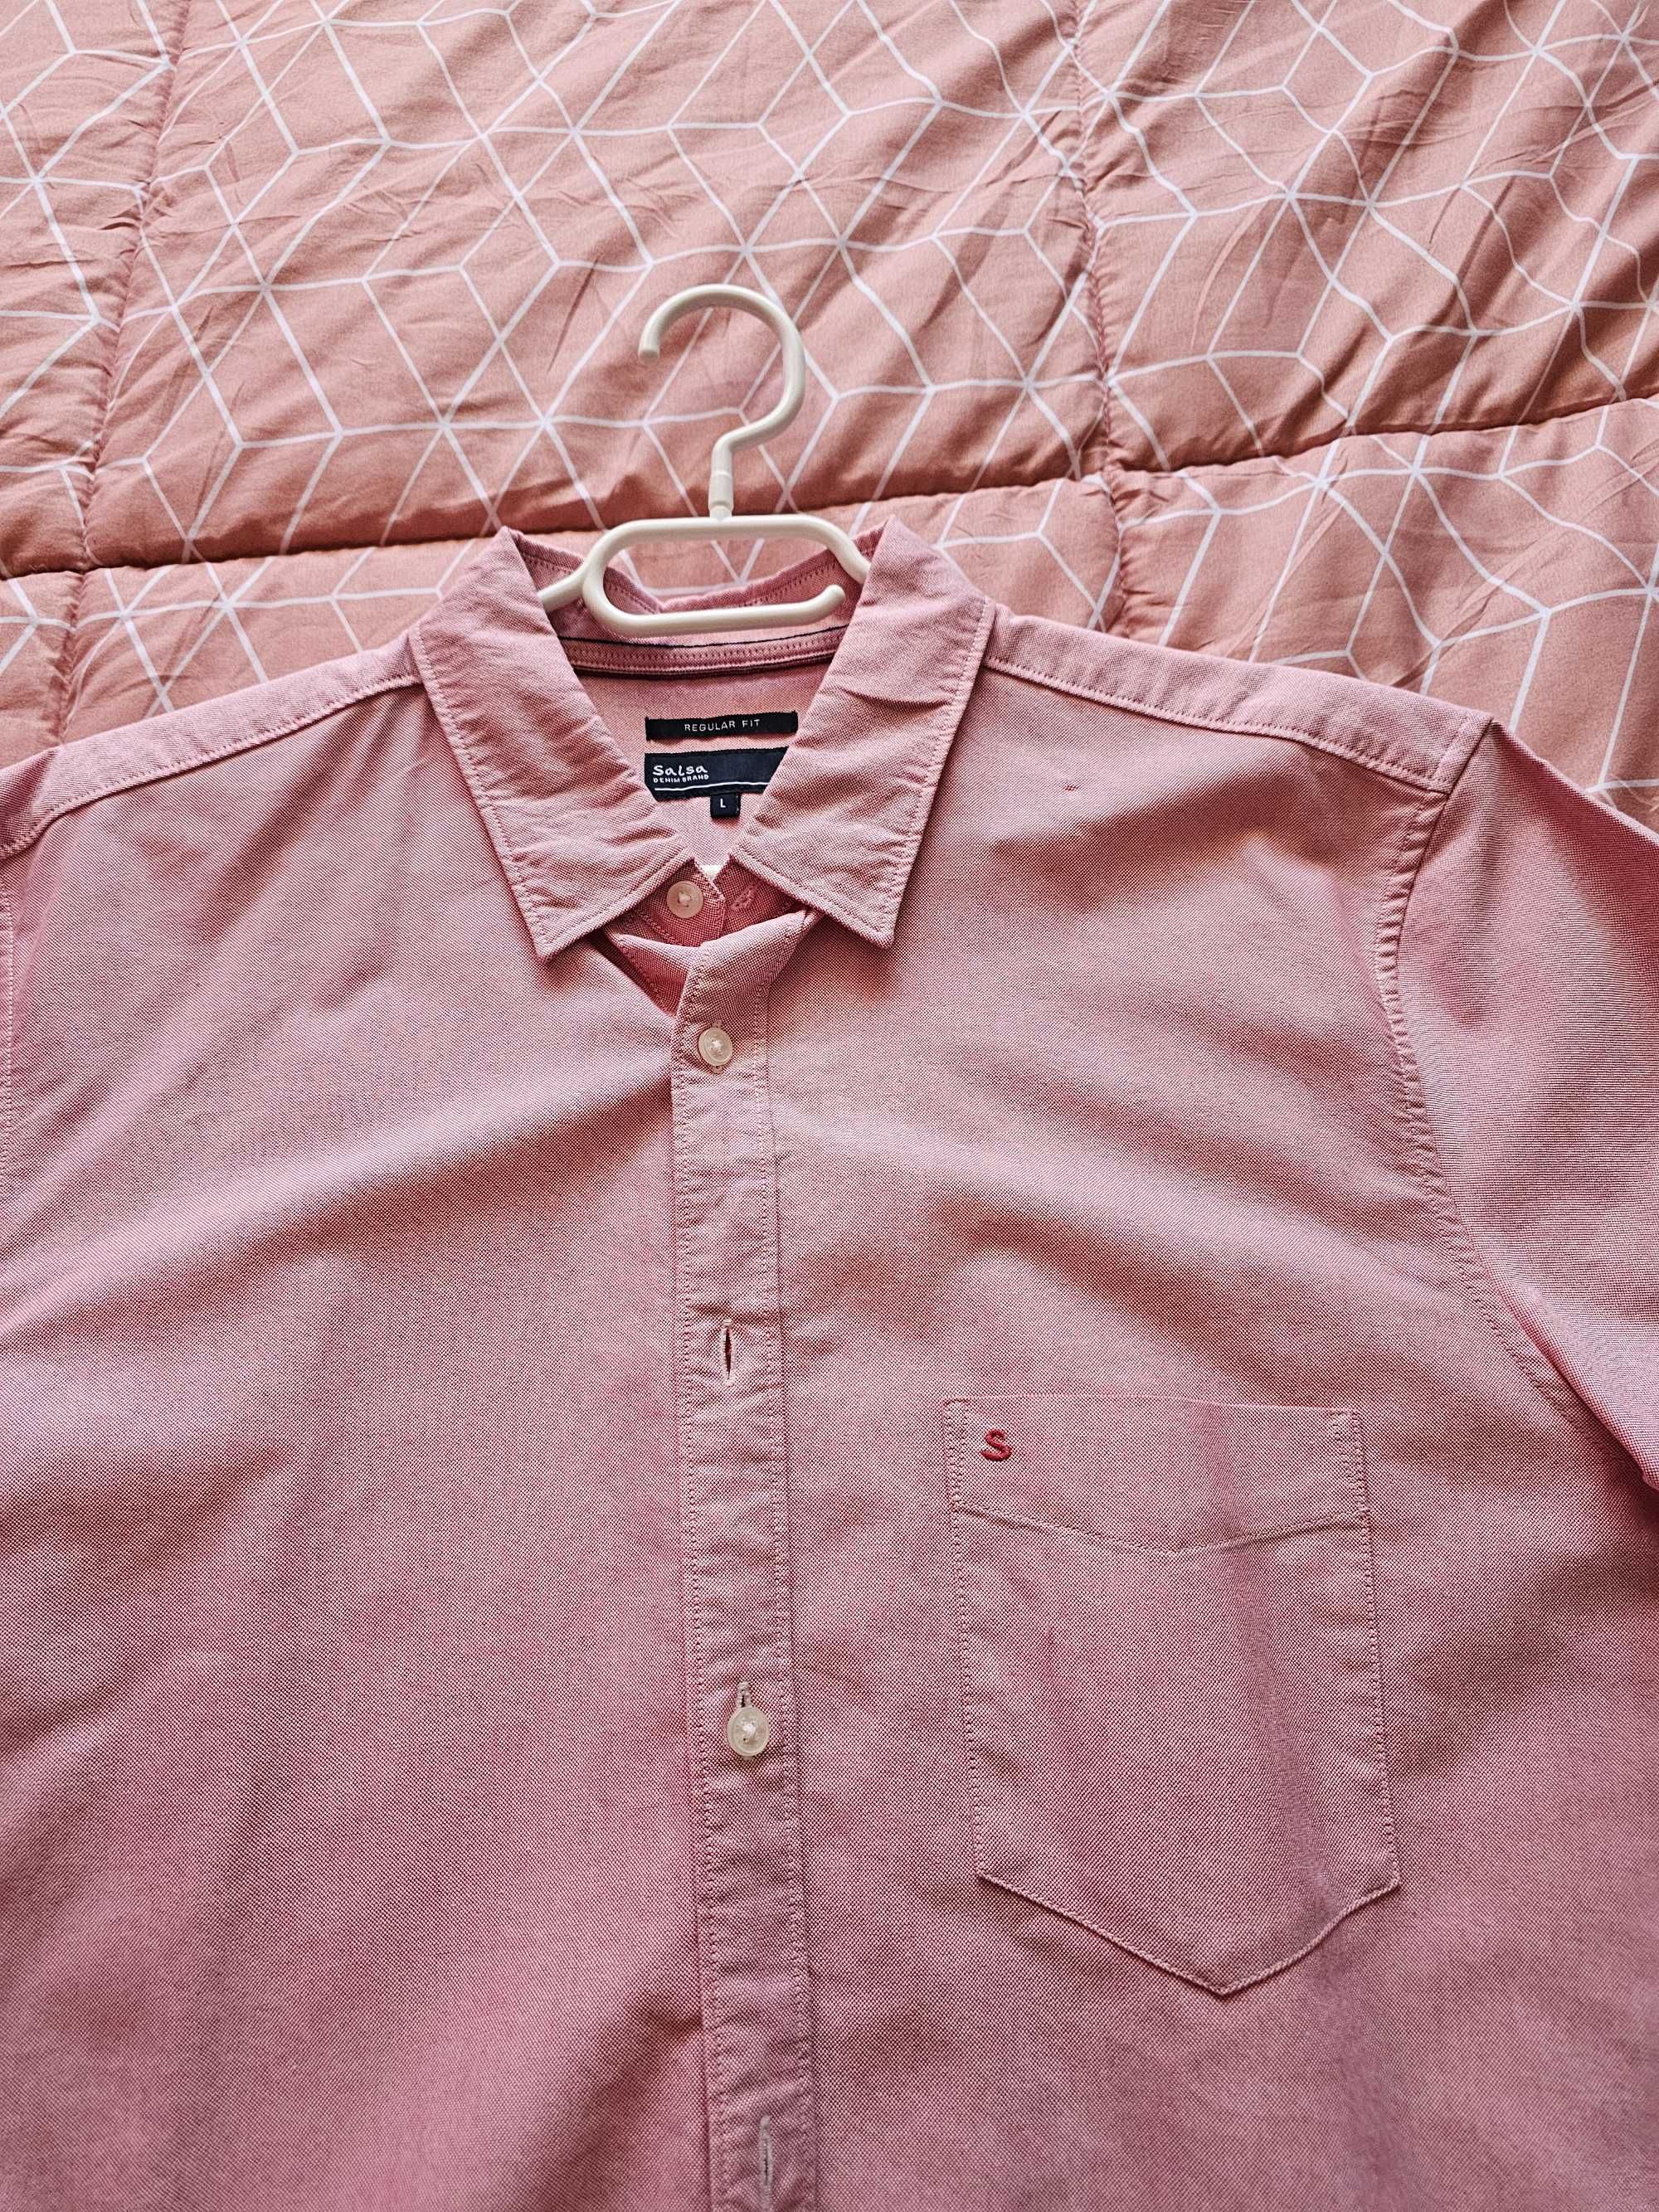 Camisa rosa Salsa homem